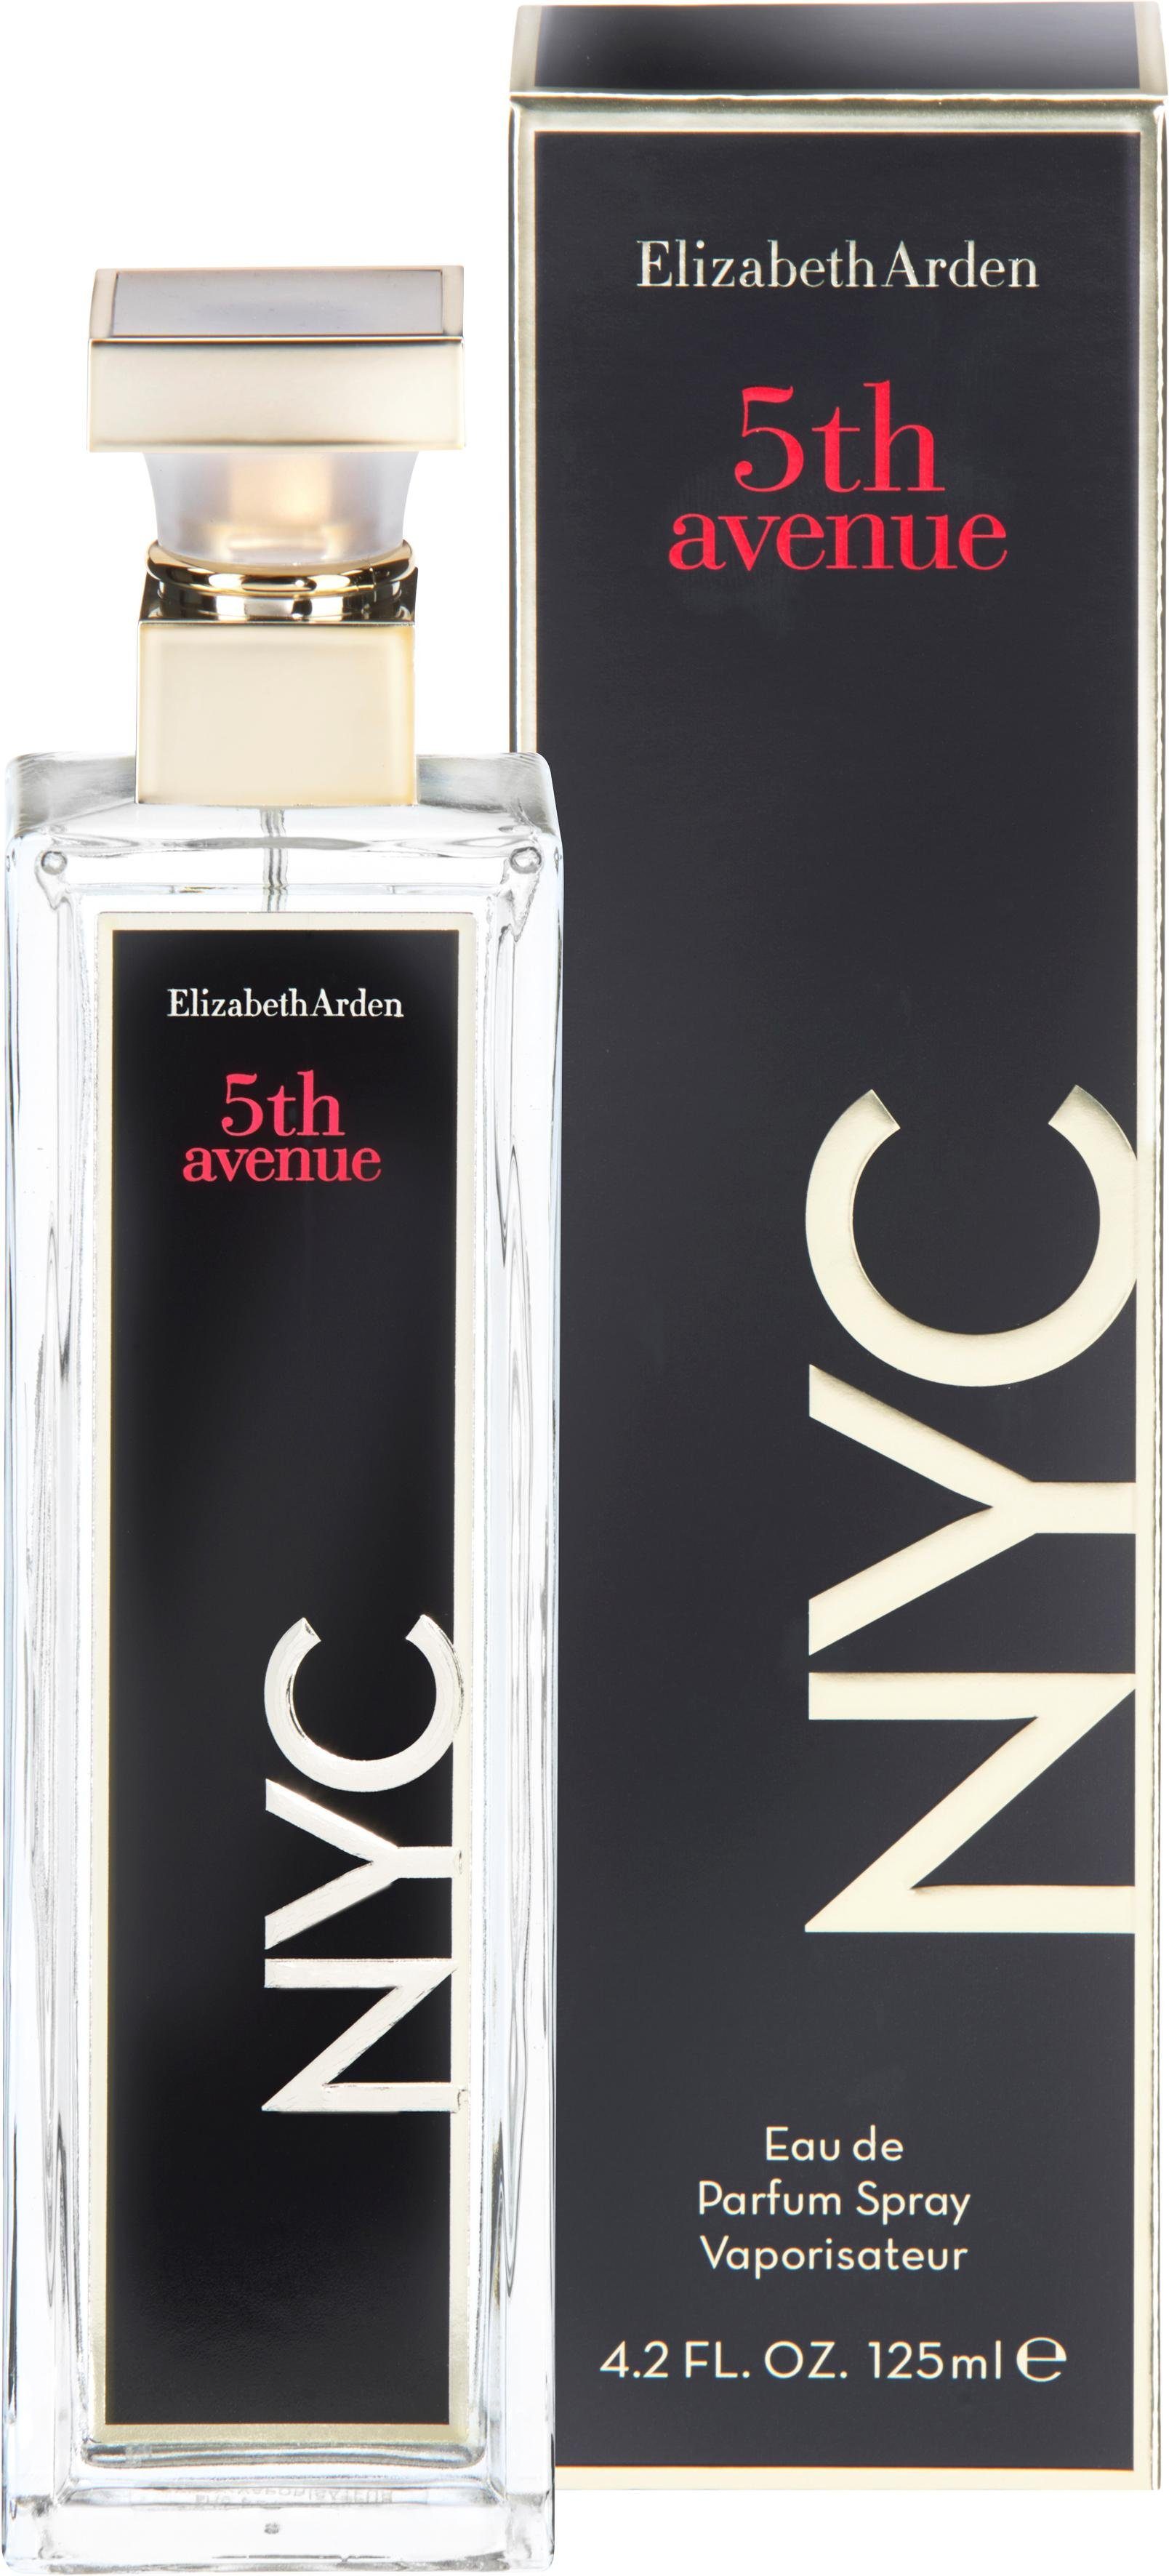 NYC Parfum Eau Elizabeth de Avenue 5th Arden